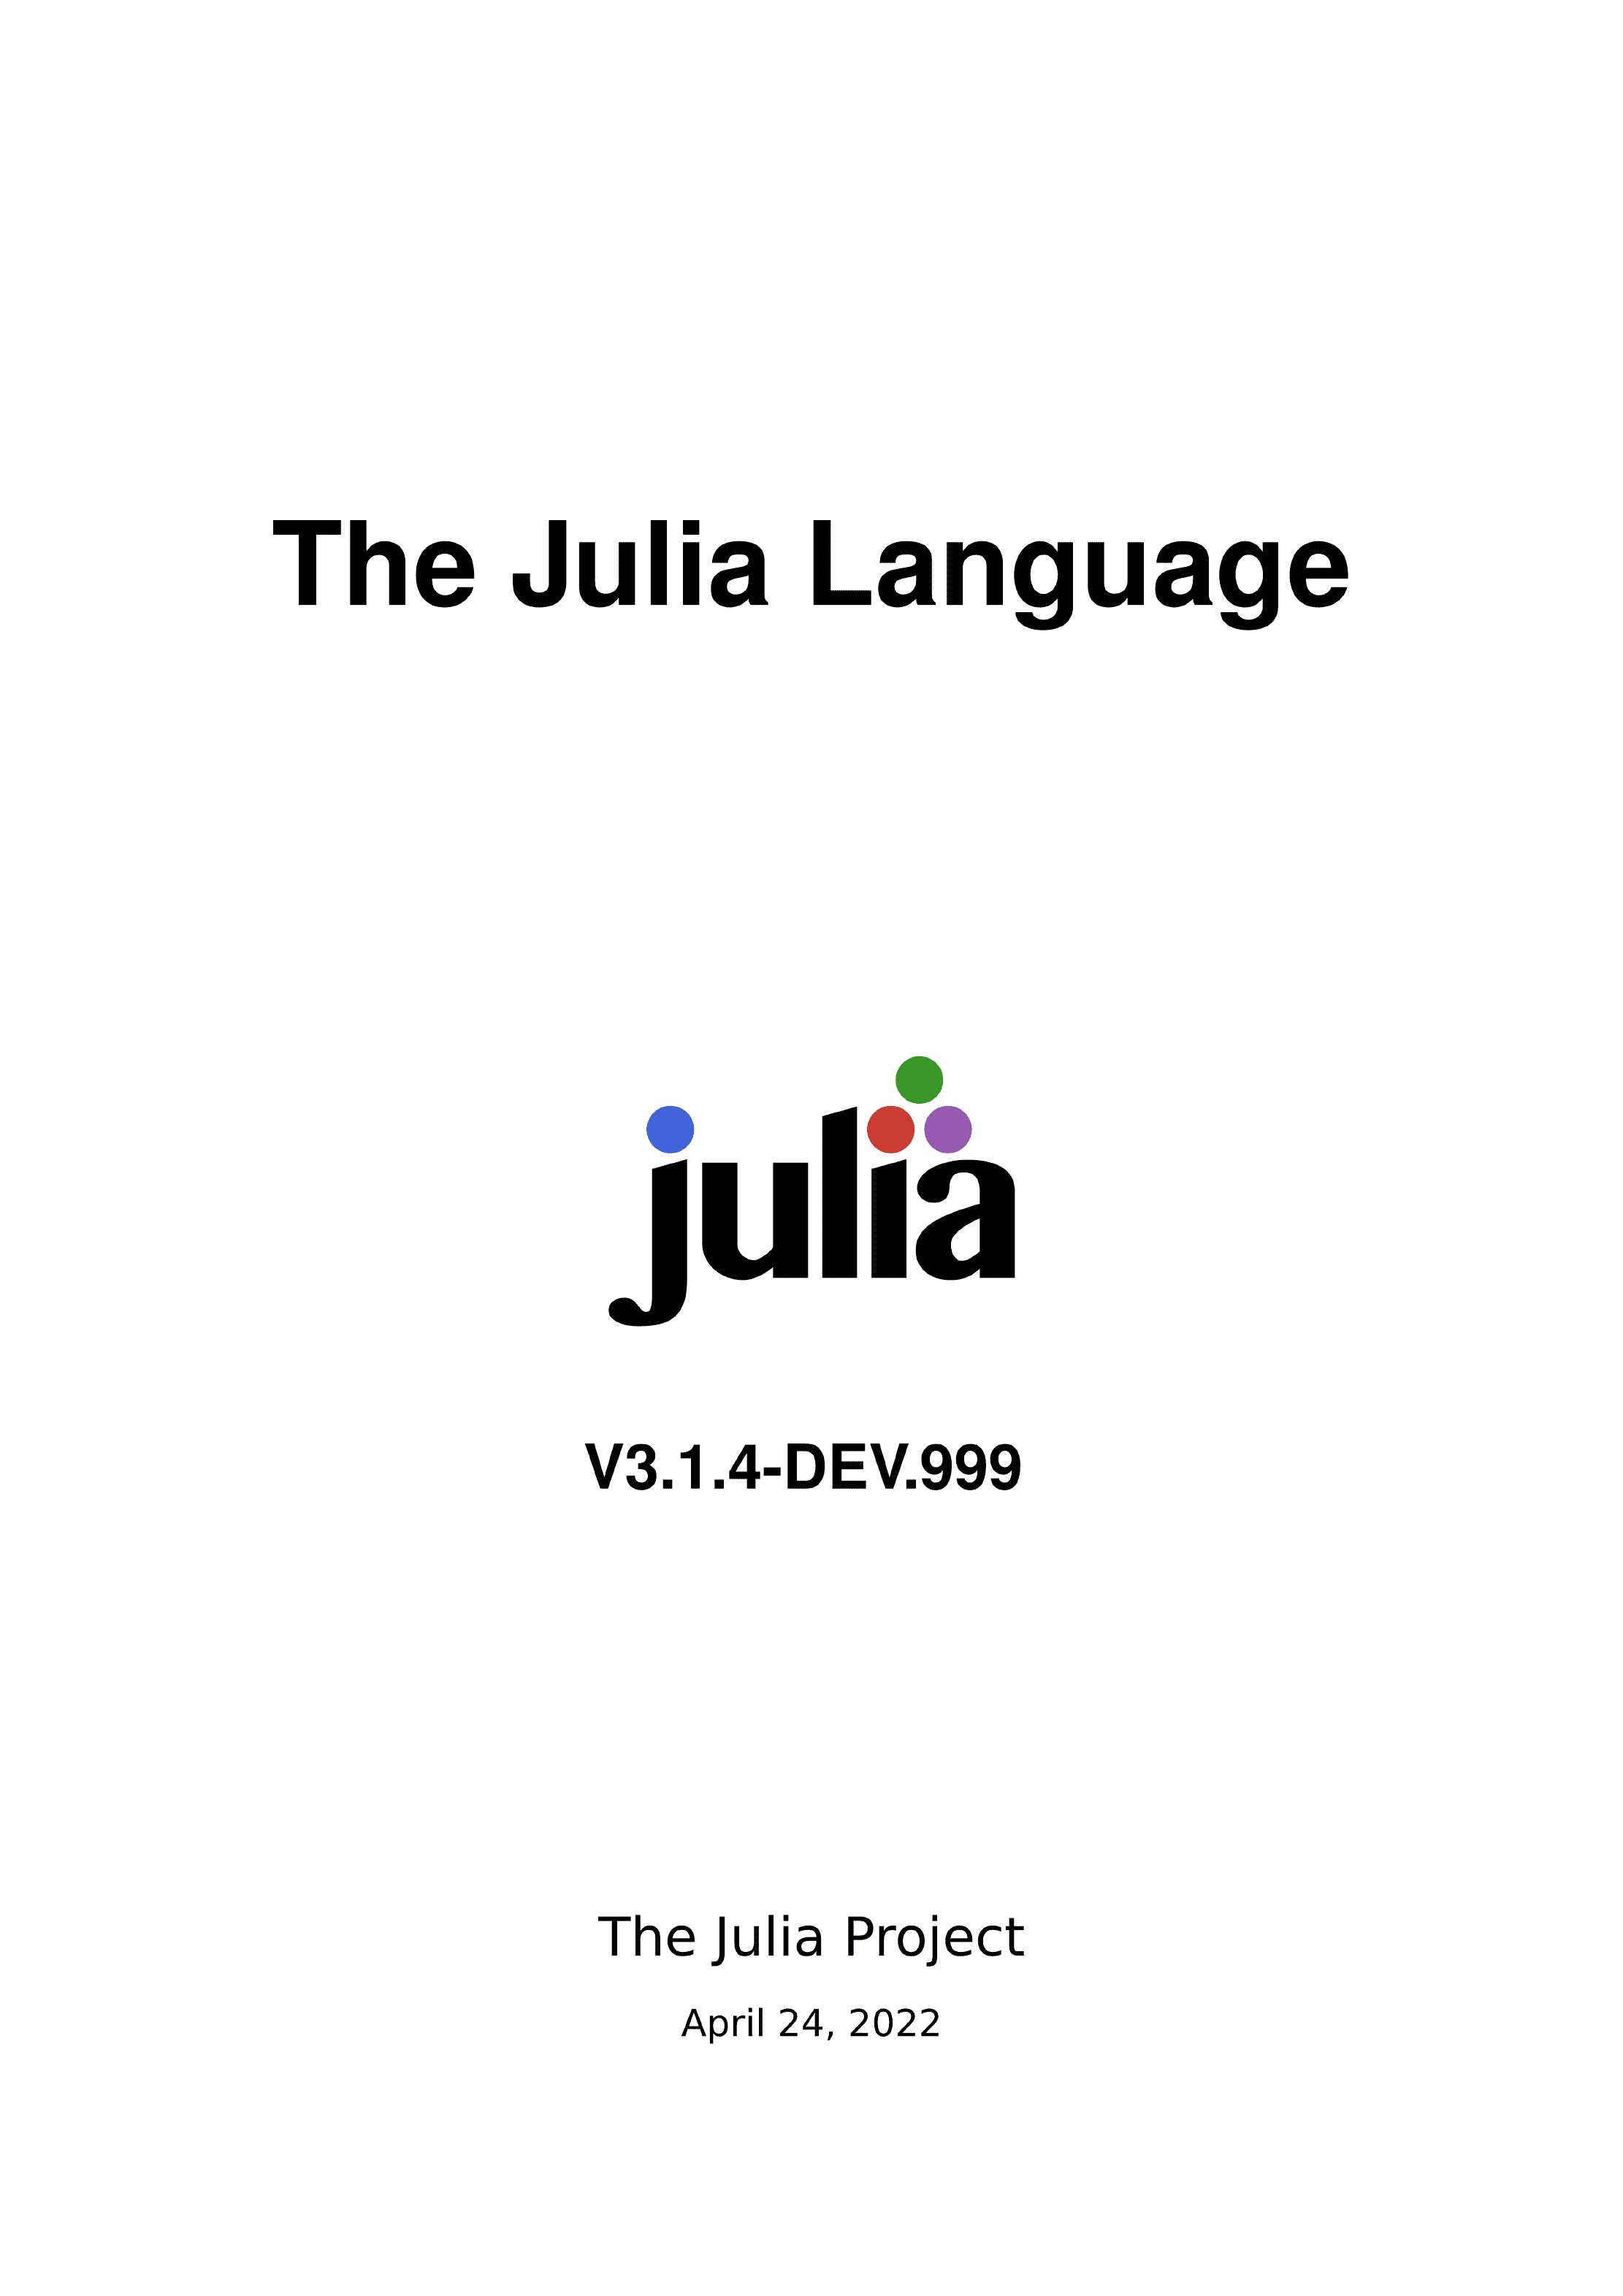 用 LaTeX 制作一个 julia 语言的书籍封面